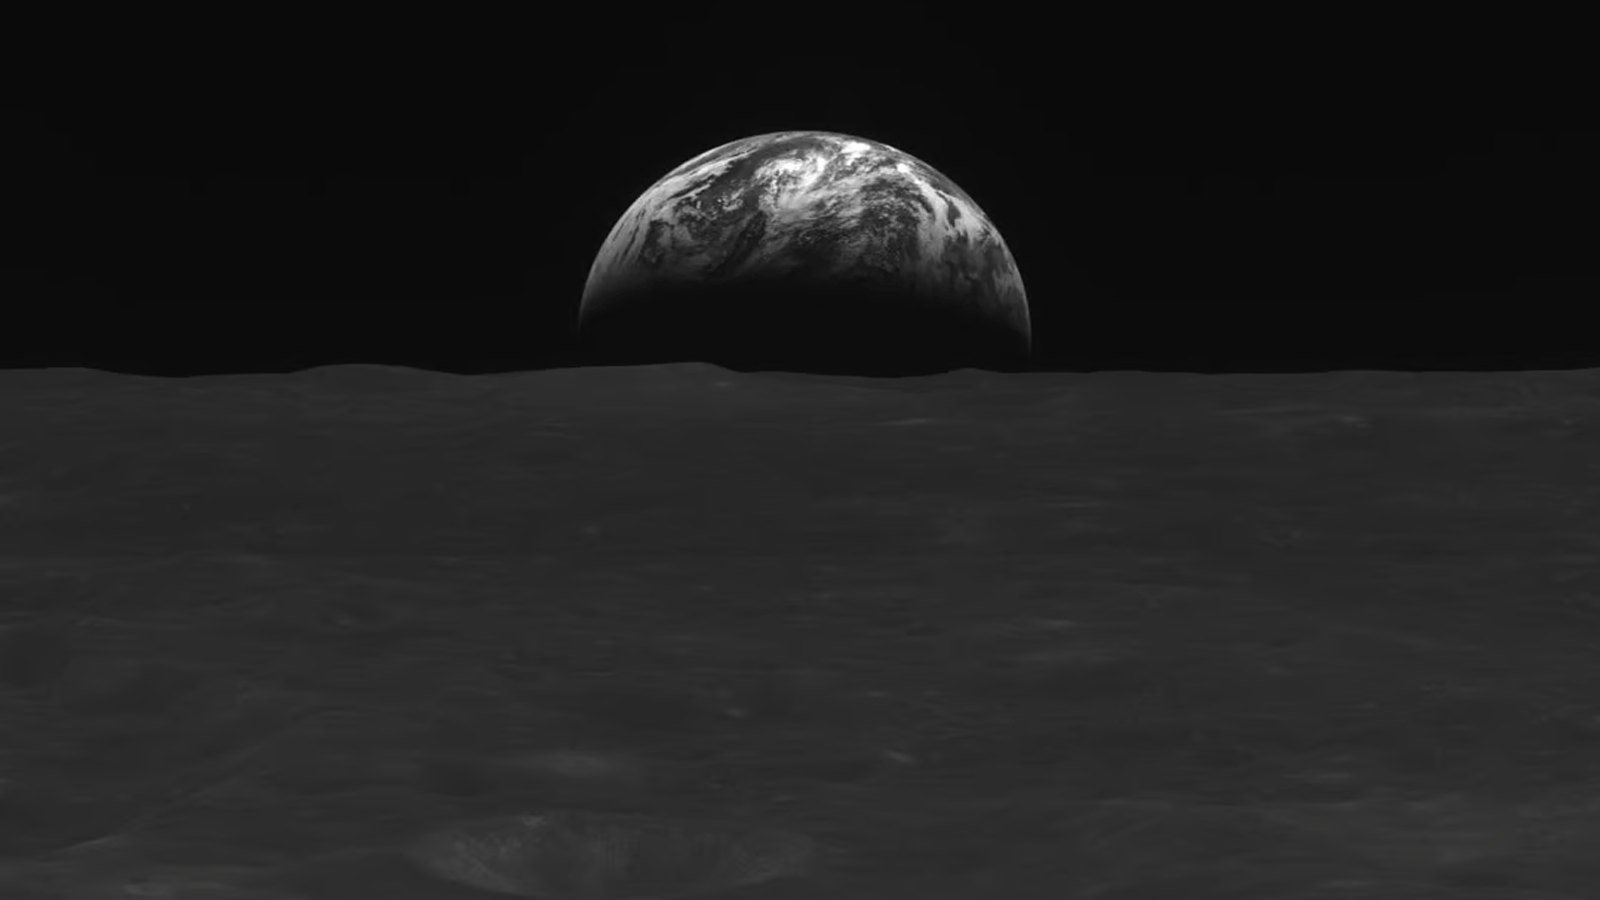 صورة بالأبيض والأسود لسطح القمر والأرض تم التقاطها بواسطة المركبة القمرية الكورية الجنوبية دانوري.